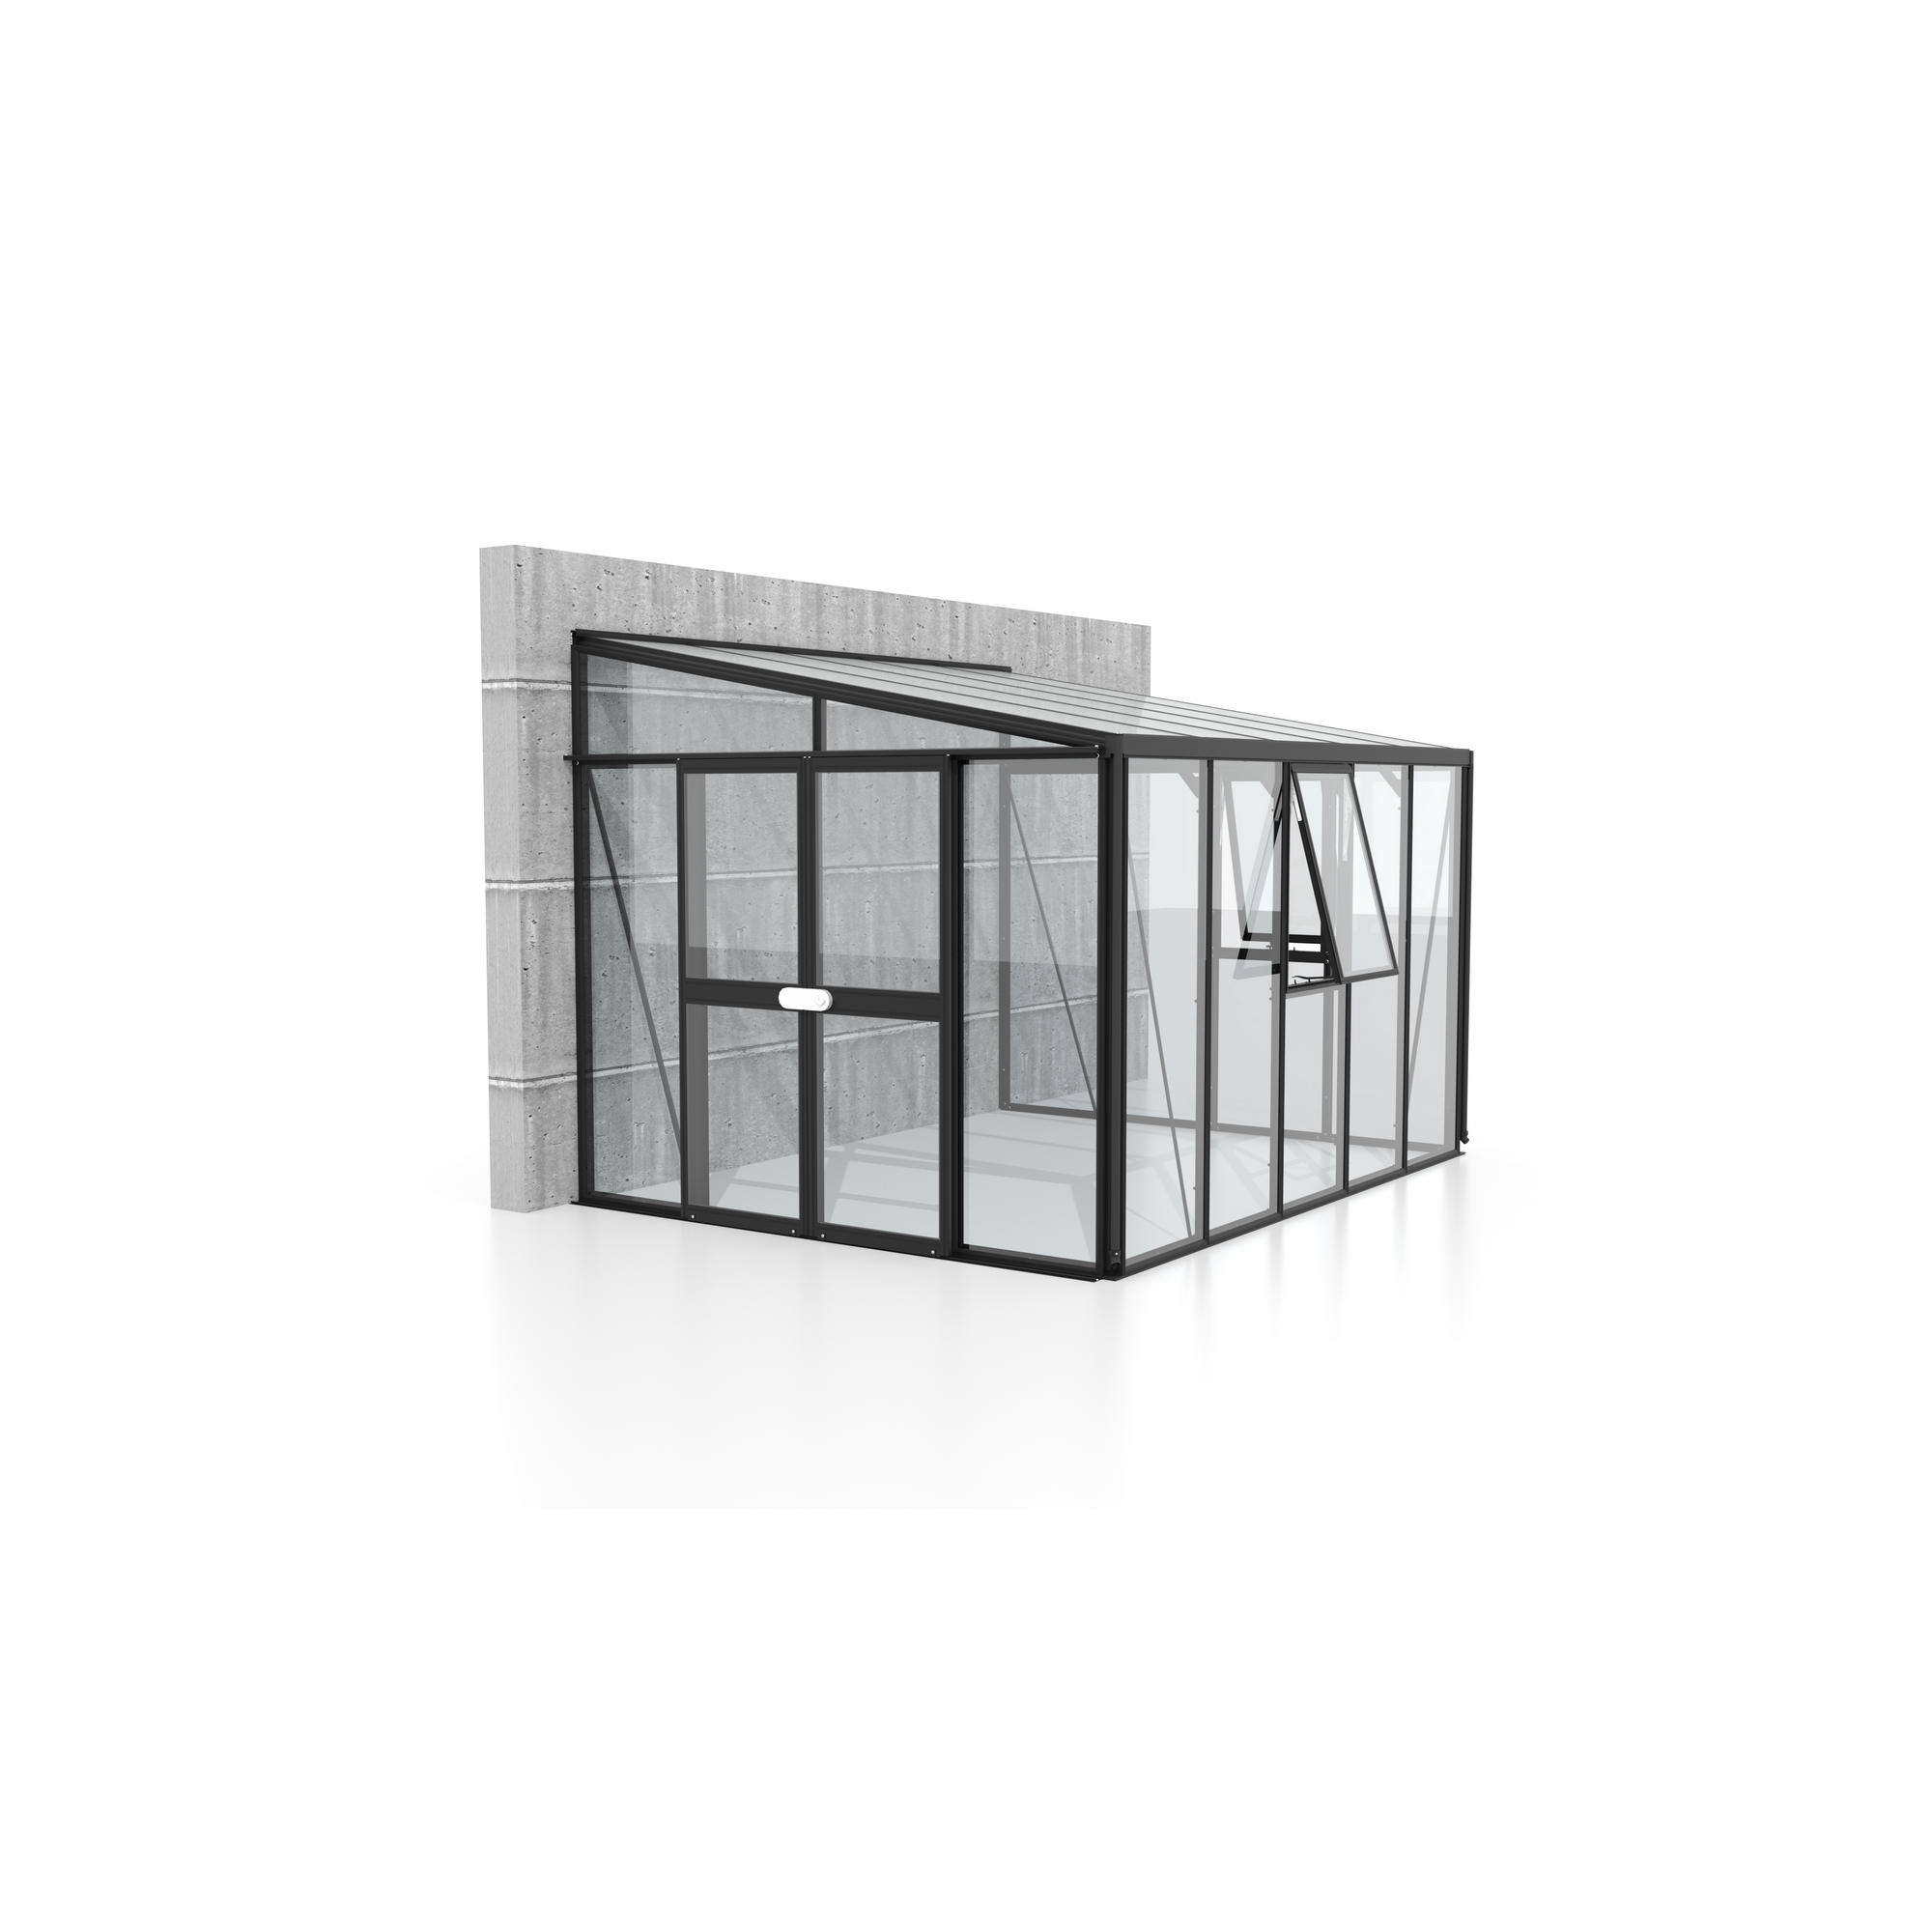 Anlehngewächshaus 'Athena 8600' 8,6 m² 267,9 x 343,8 cm 3 mm Sicherheitsglas/10 mm Hohlkammerplatten schwarz + product picture